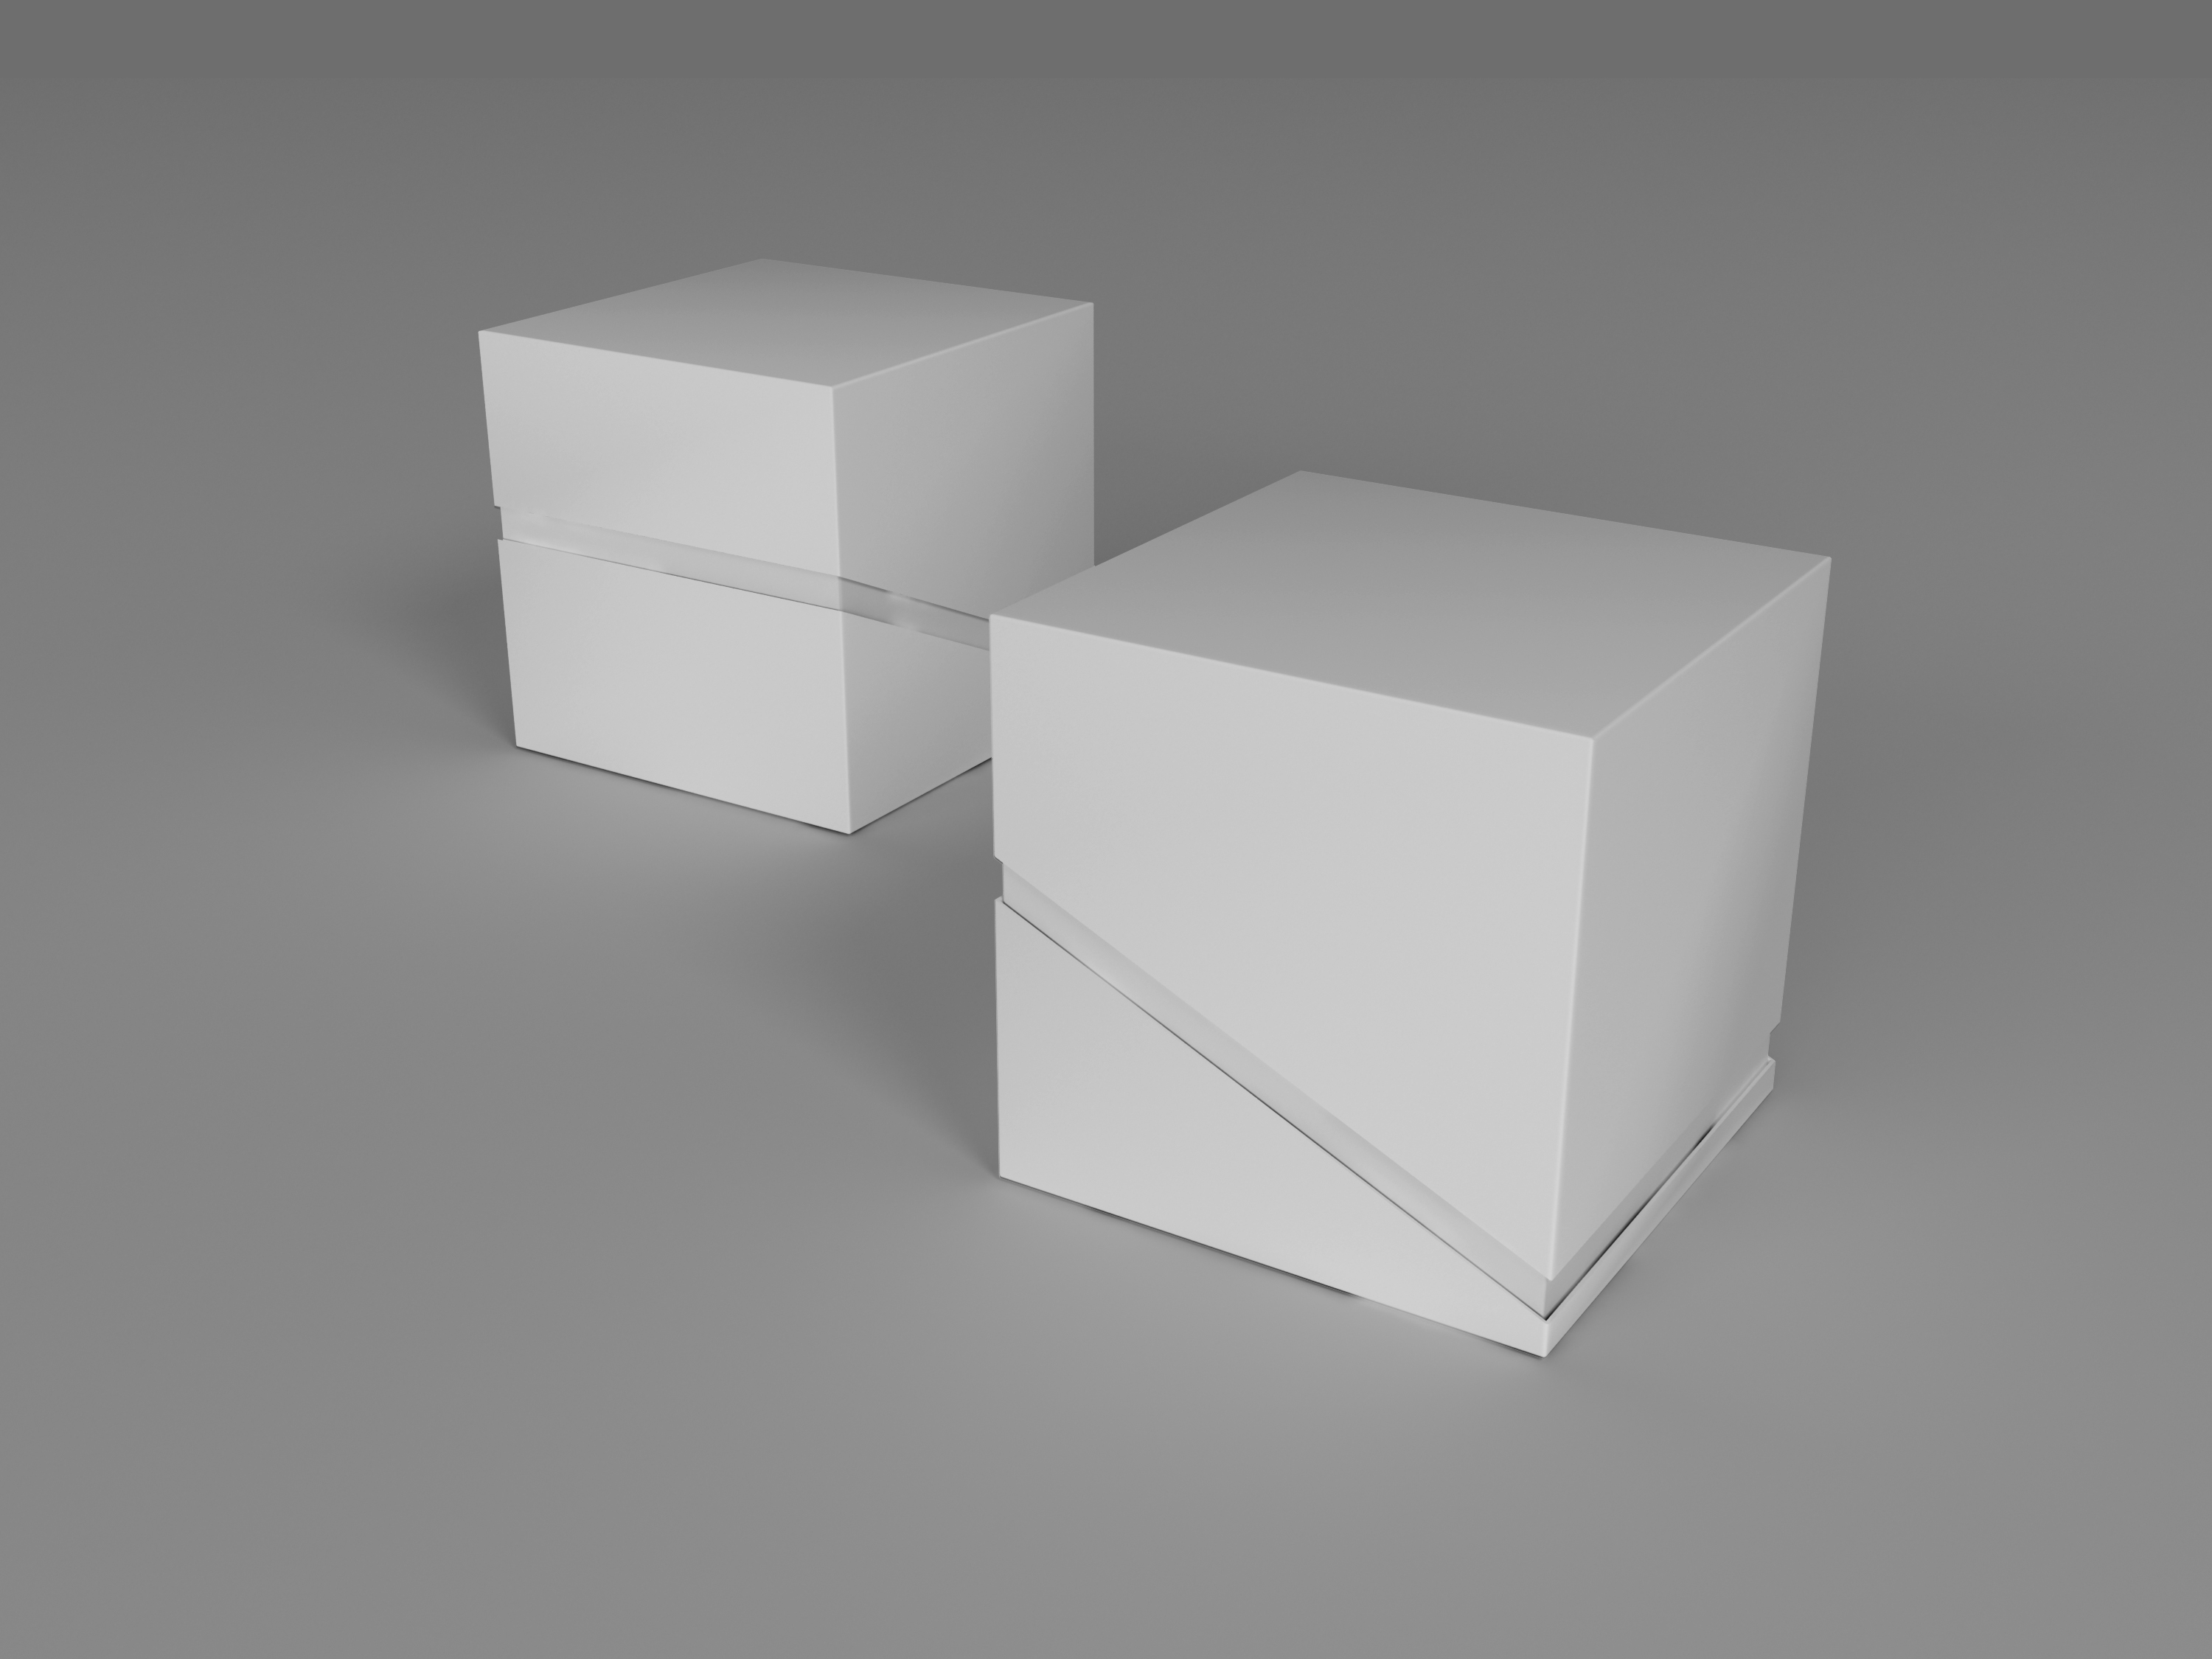 高品质高端的礼品盒纸盒PSD样机模板 Package Box